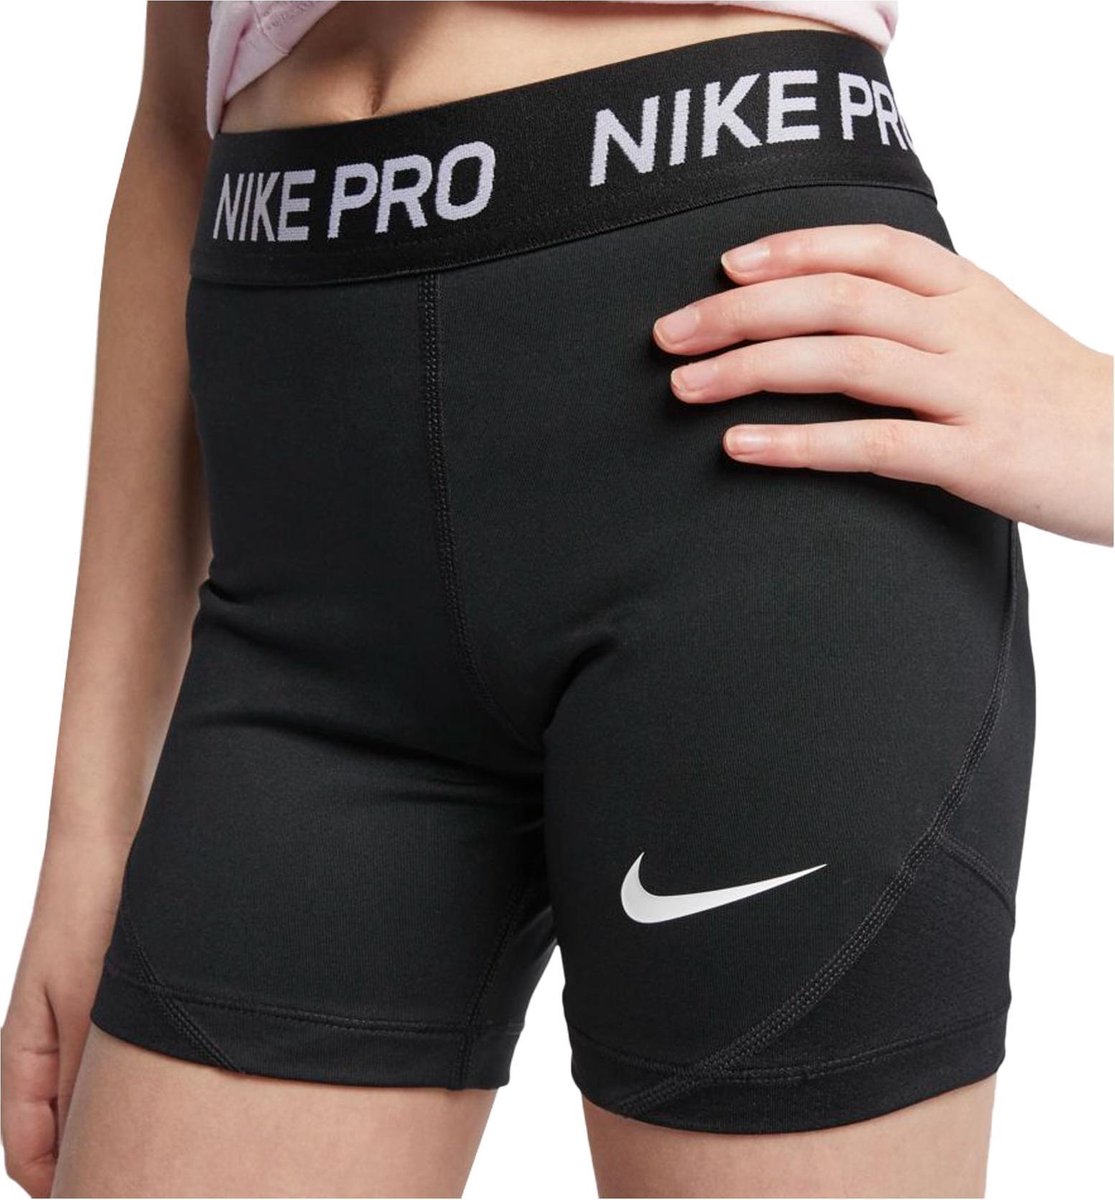 Nike Pro Sportlegging - Maat 164 - Meisjes - zwart/wit | bol.com